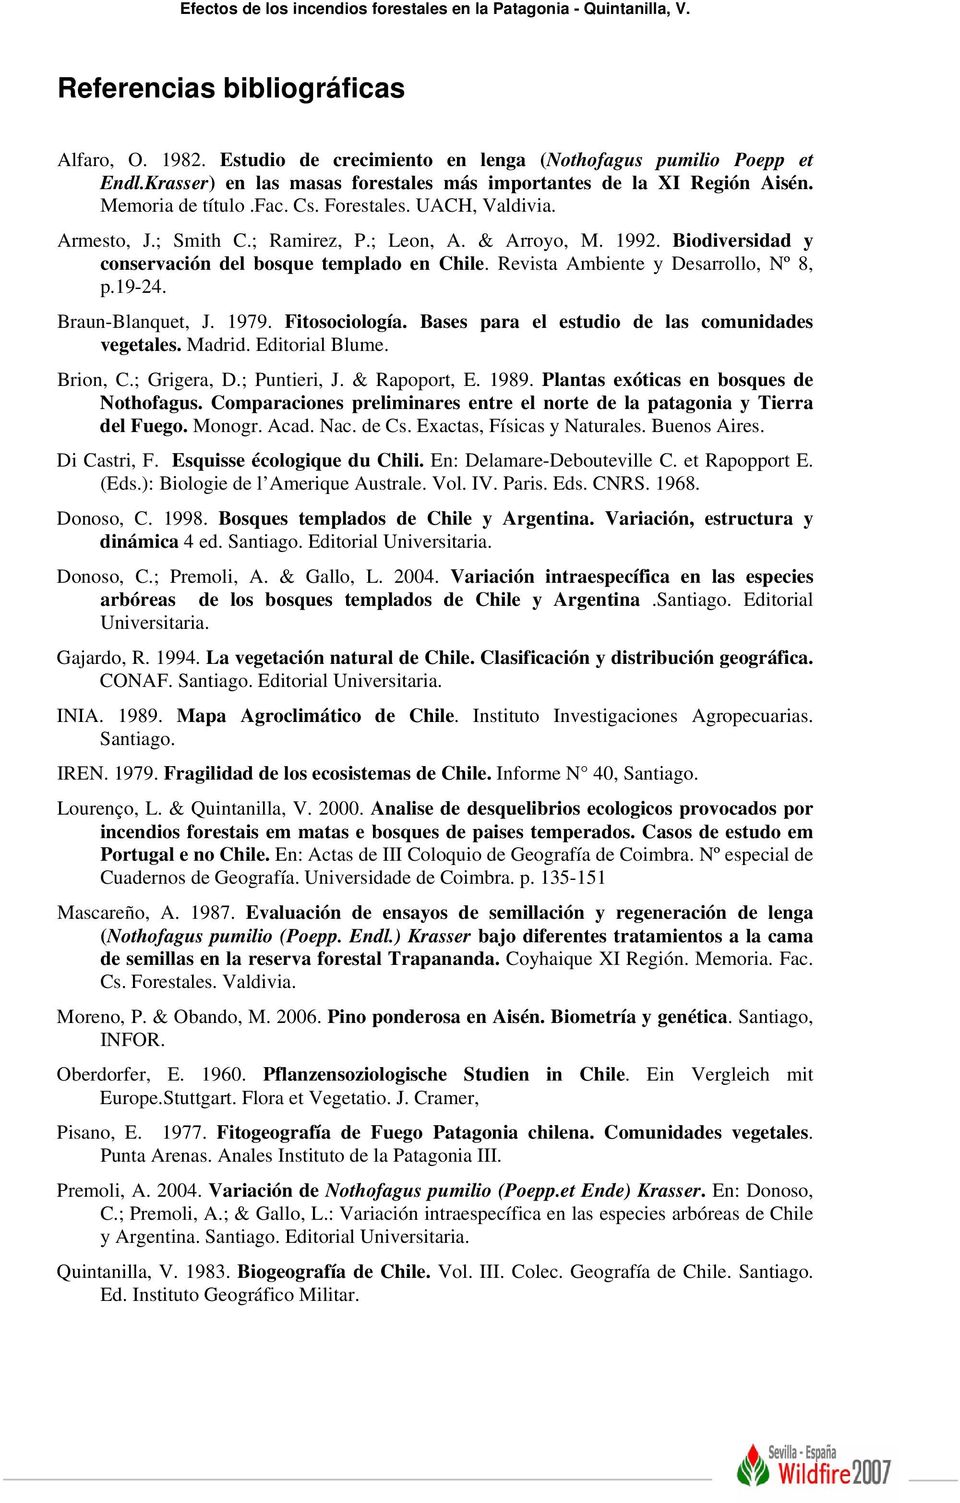 Biodiversidad y conservación del bosque templado en Chile. Revista Ambiente y Desarrollo, Nº 8, p.19-24. Braun-Blanquet, J. 1979. Fitosociología. Bases para el estudio de las comunidades vegetales.